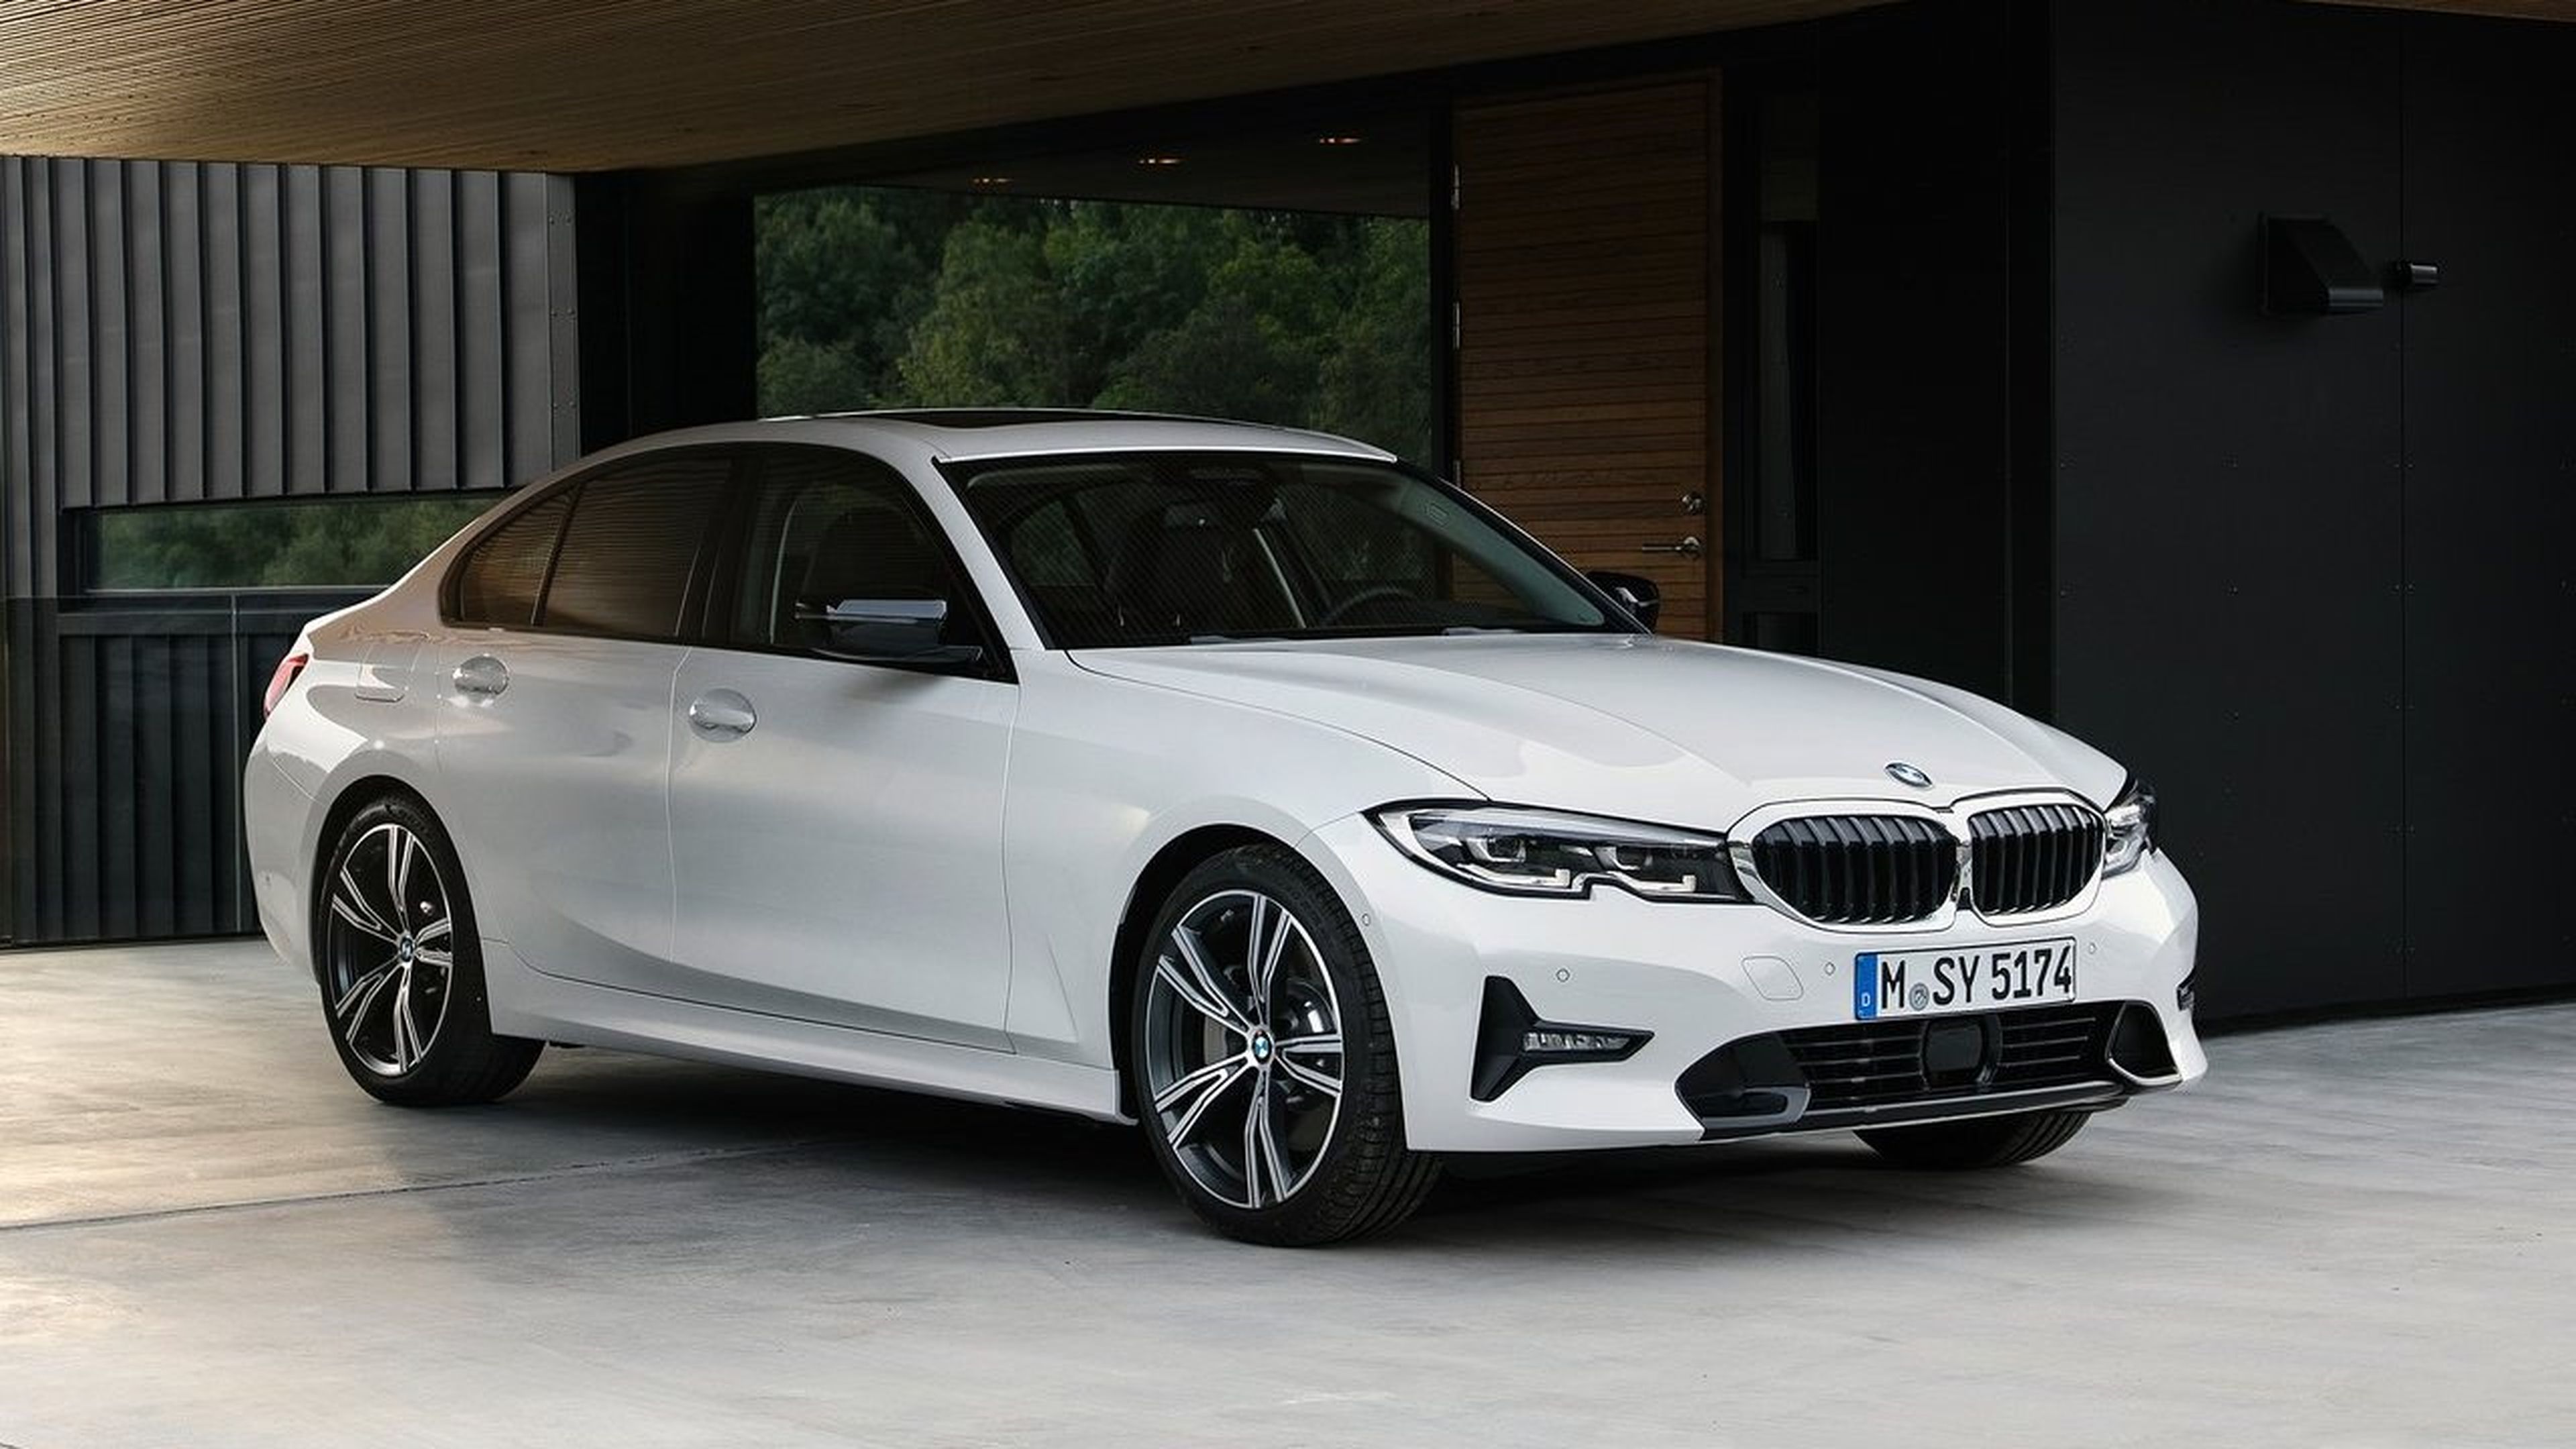 5 secretos del nuevo BMW Serie 3 2019